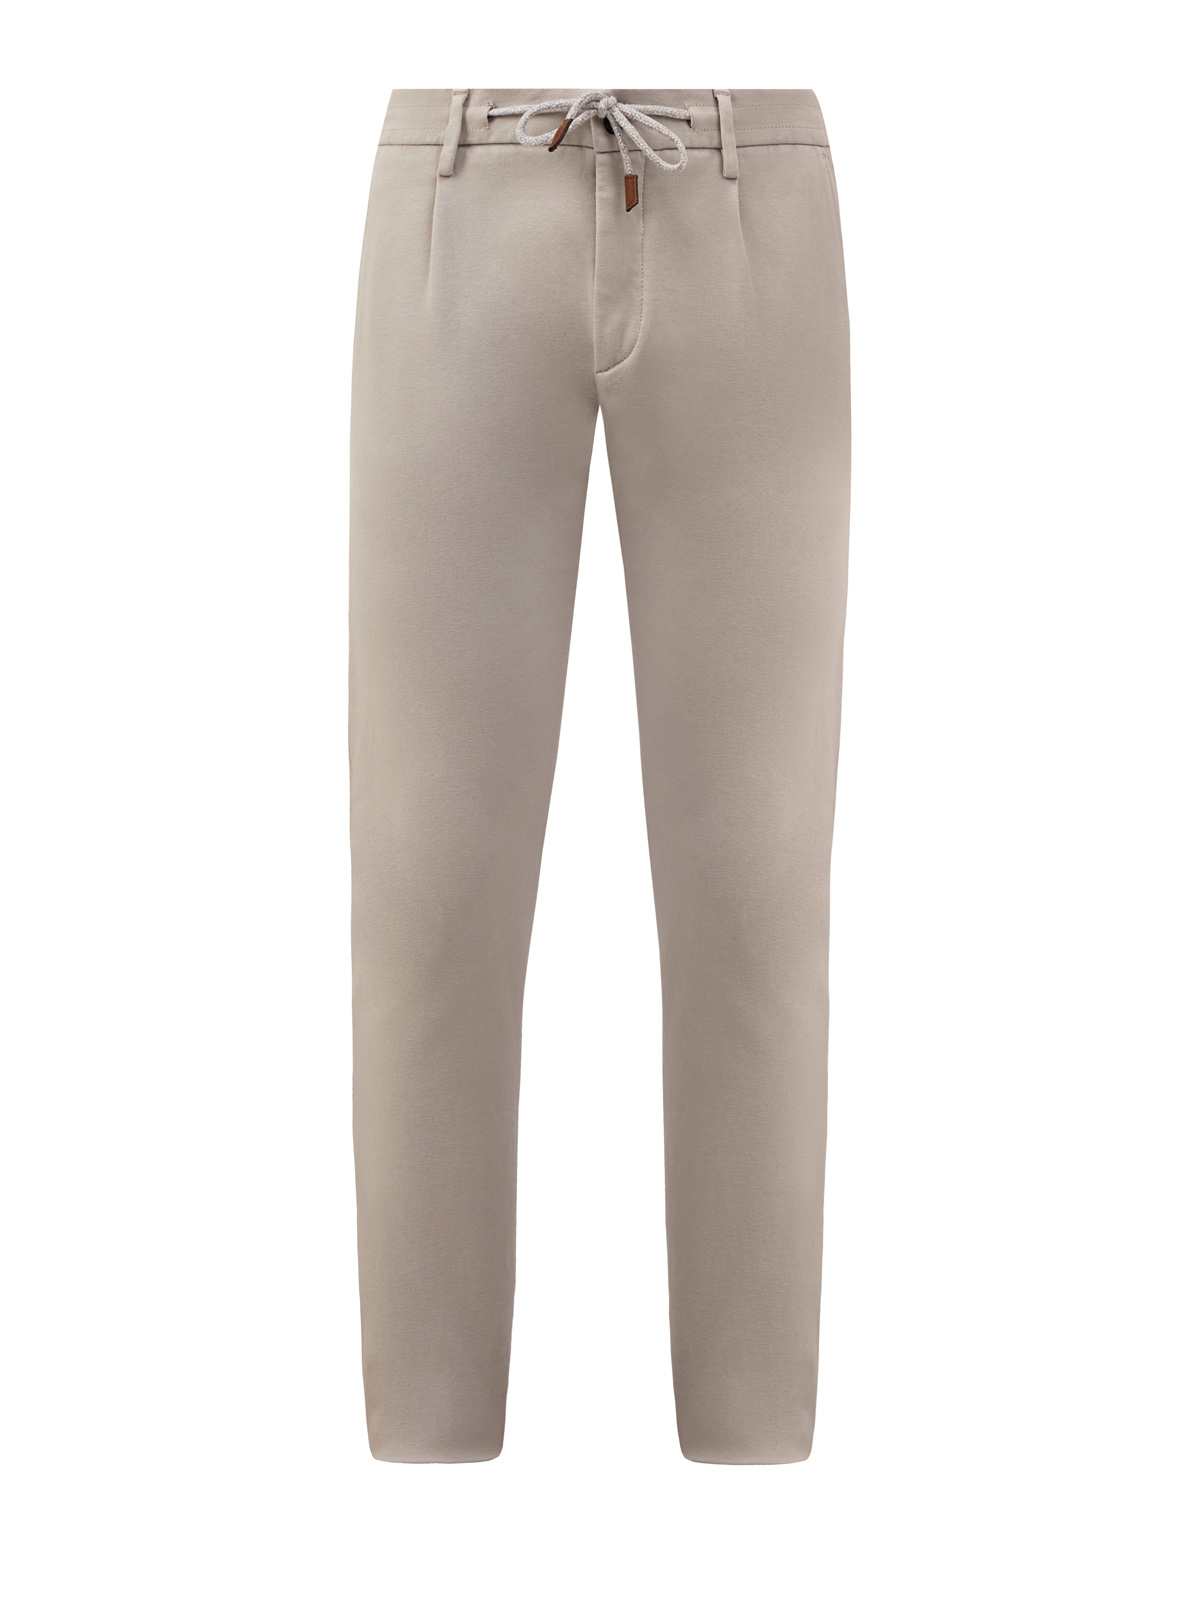 Хлопковые брюки в стиле sprezzatura с поясом на кулиске ELEVENTY, цвет серый, размер 48;50;52;54 - фото 1